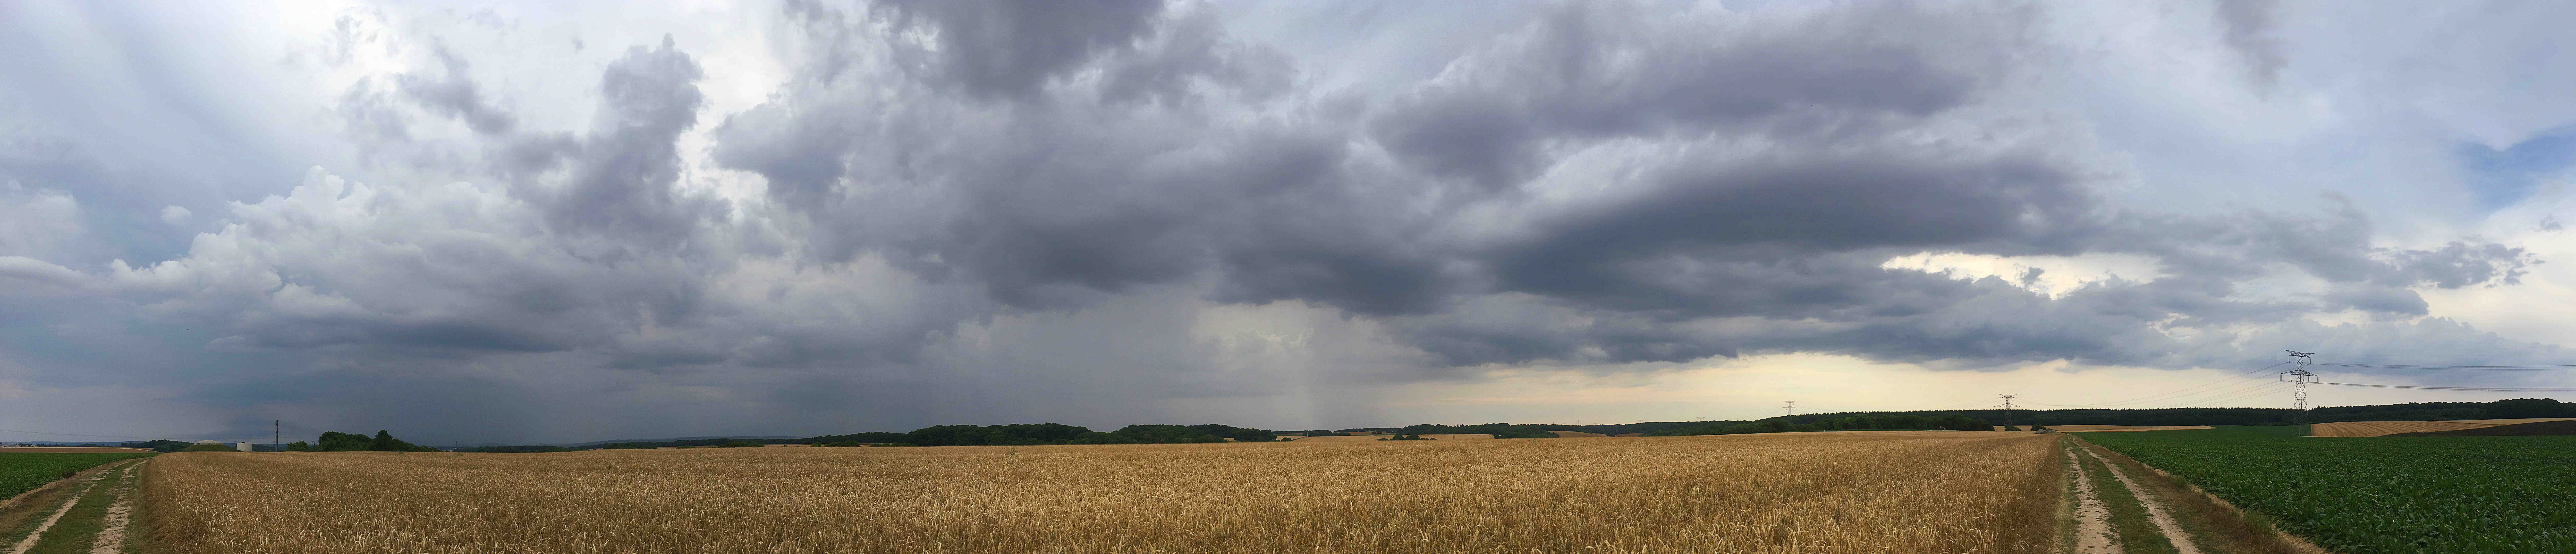 Premier orage très faible qui s'essouflera sur place rapidement autour de Saint-Crepin-le-Mesnil Théribus... (60)
Beau rideau de pluie visible au début. - 09/07/2017 18:40 - Sébastien GIRARD